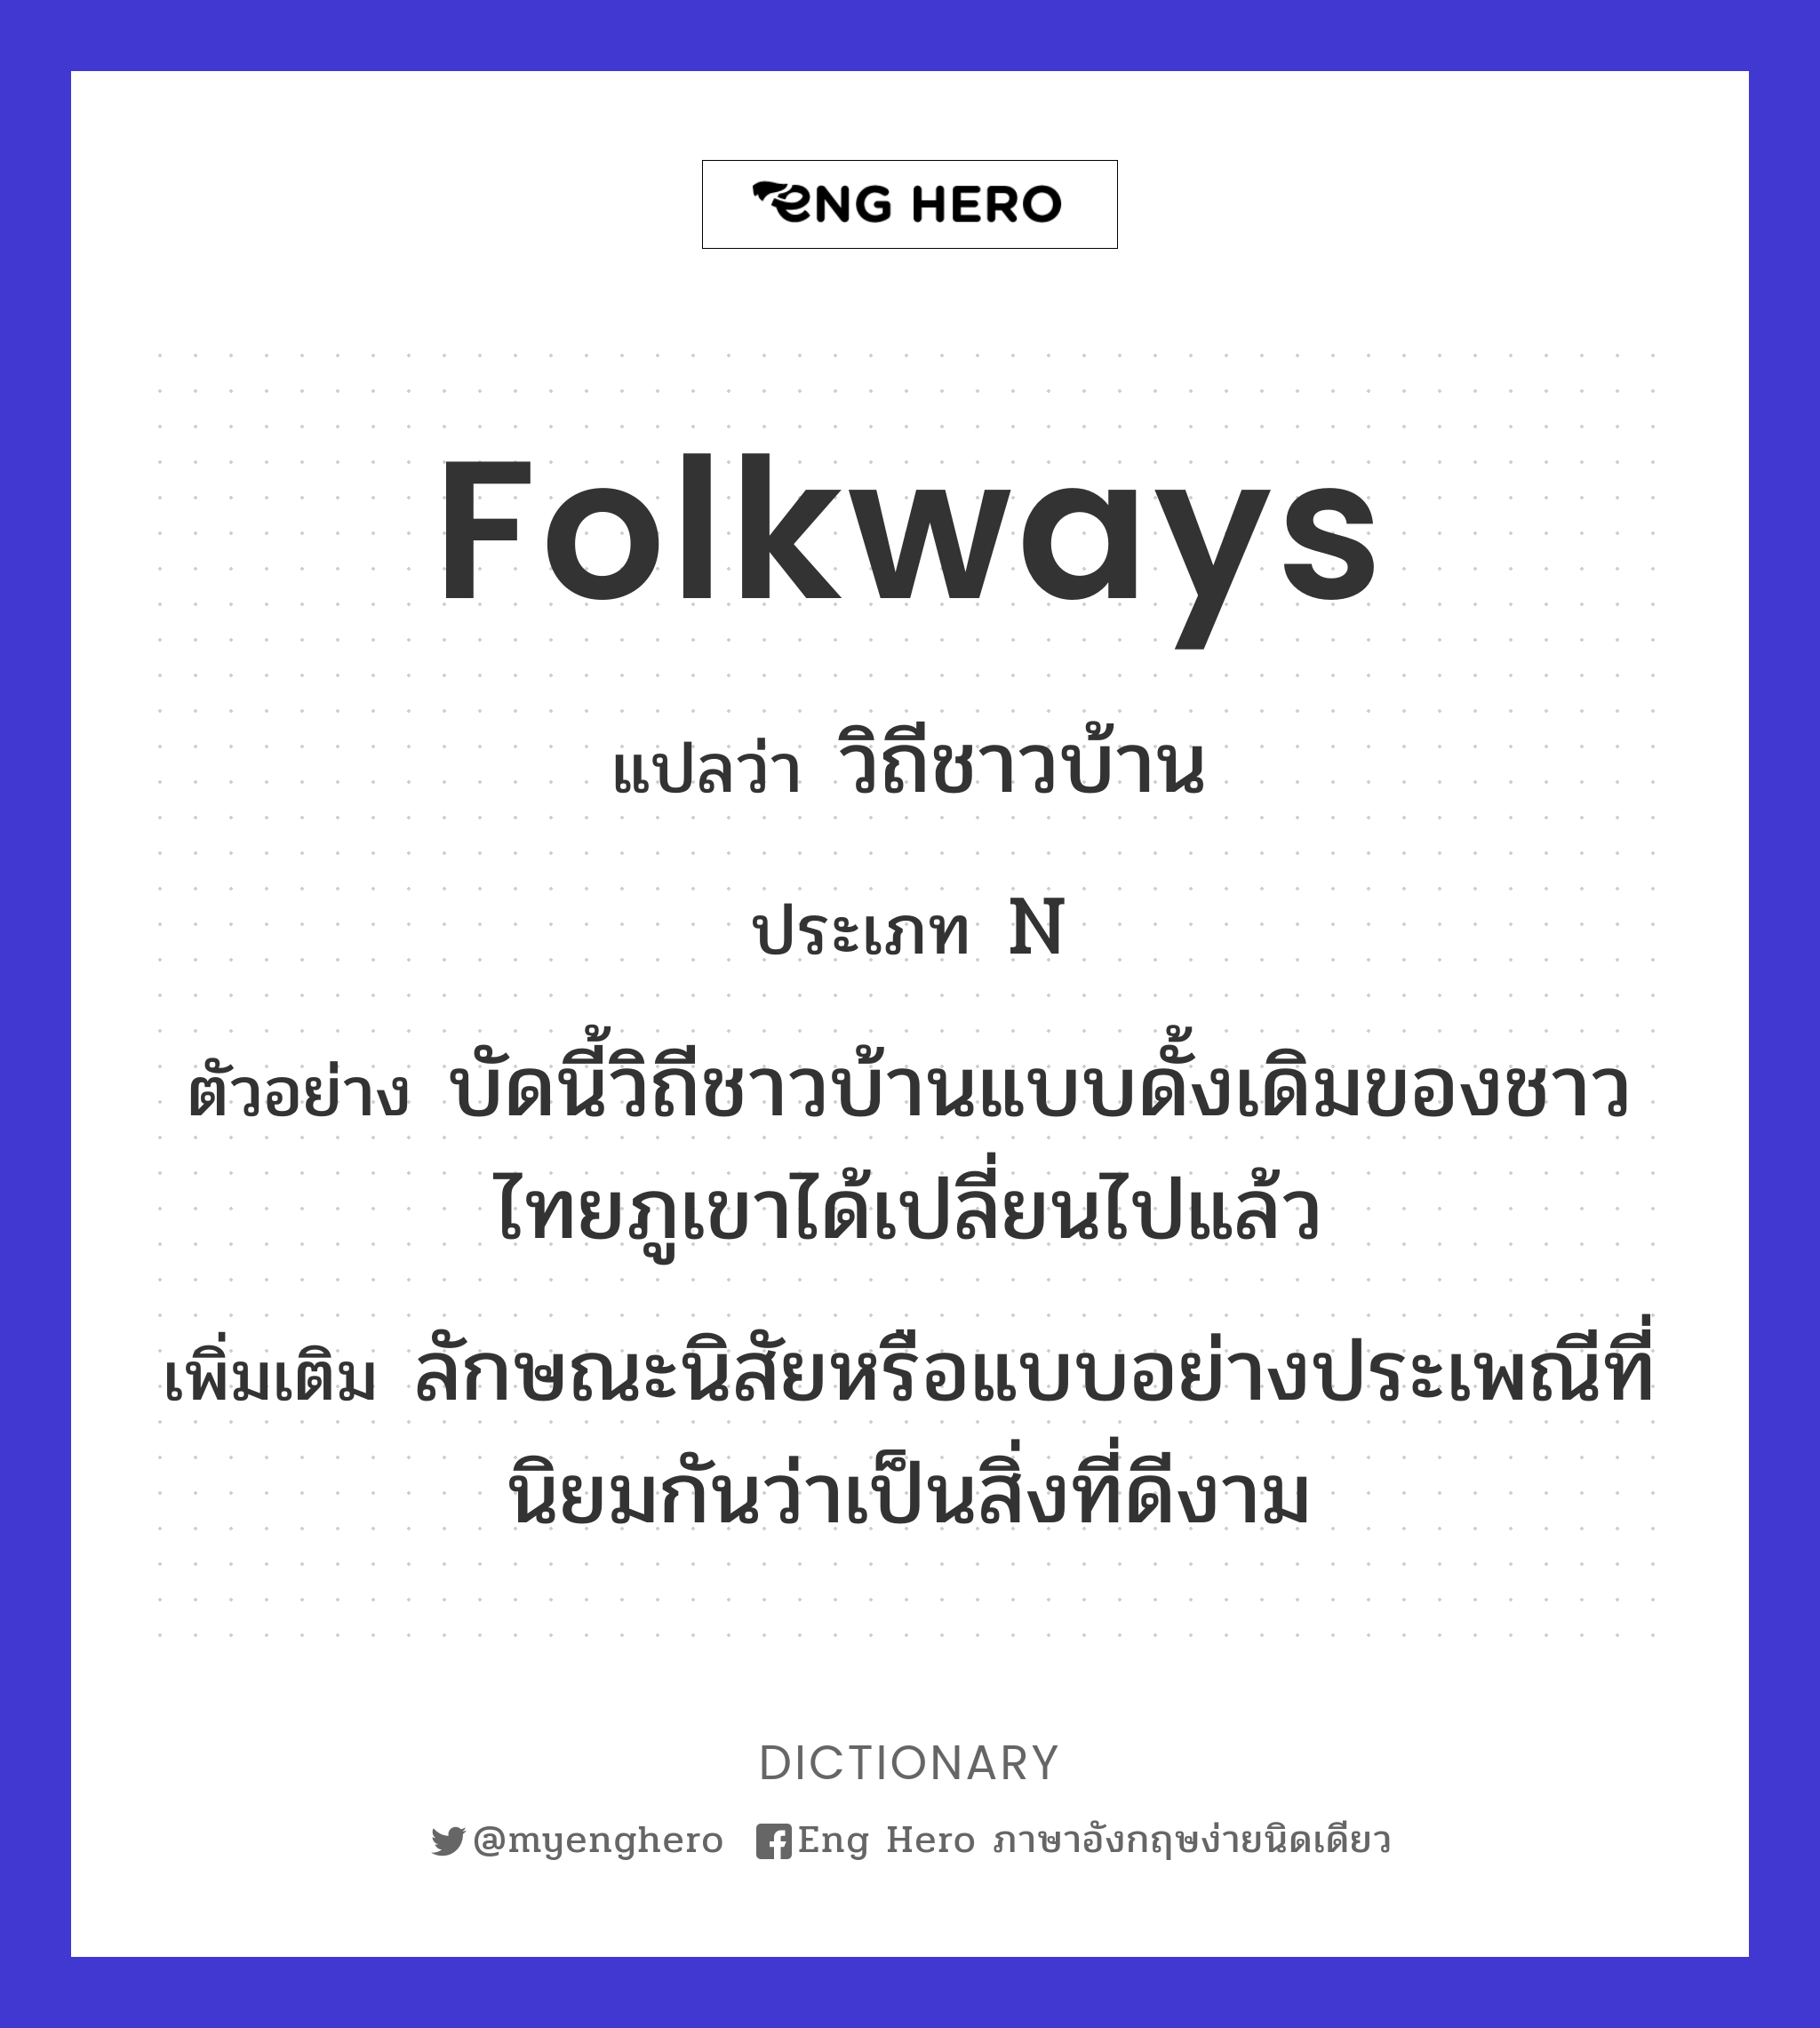 folkways